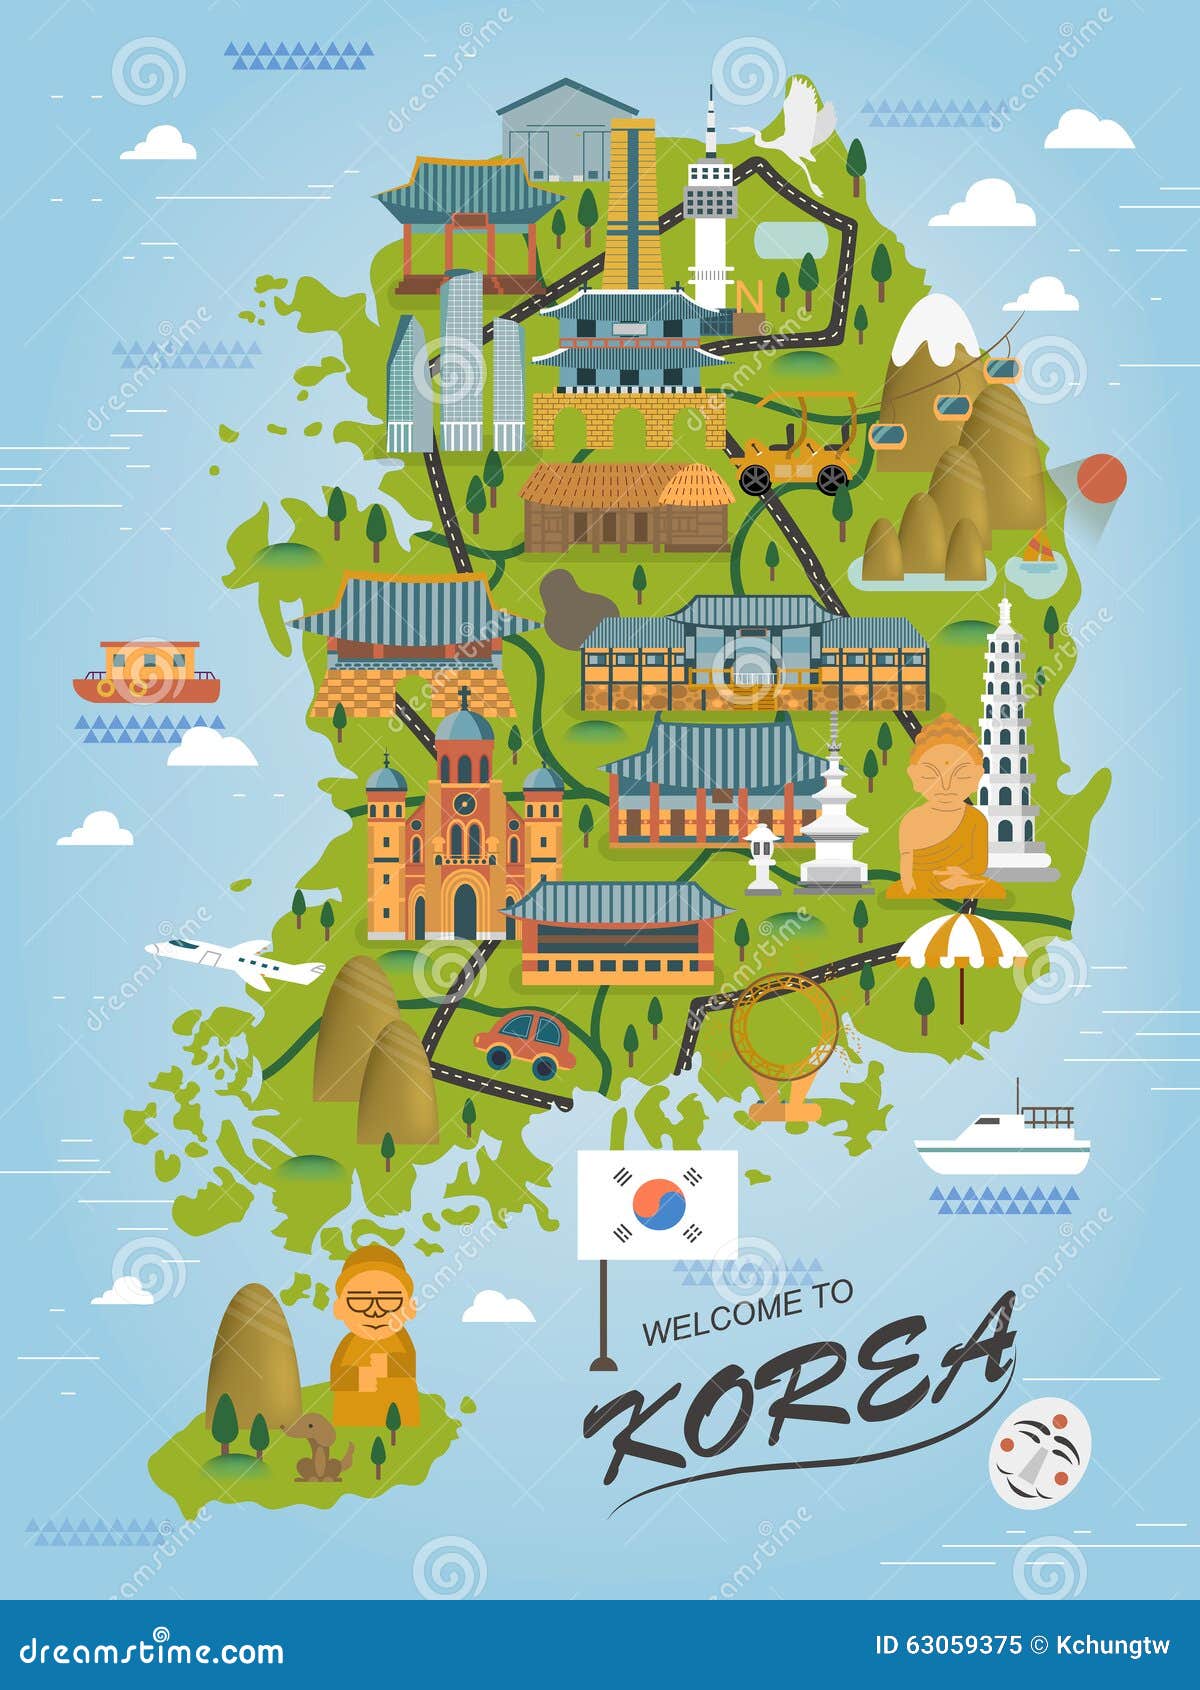 库存例证: 韩国旅行地图图片